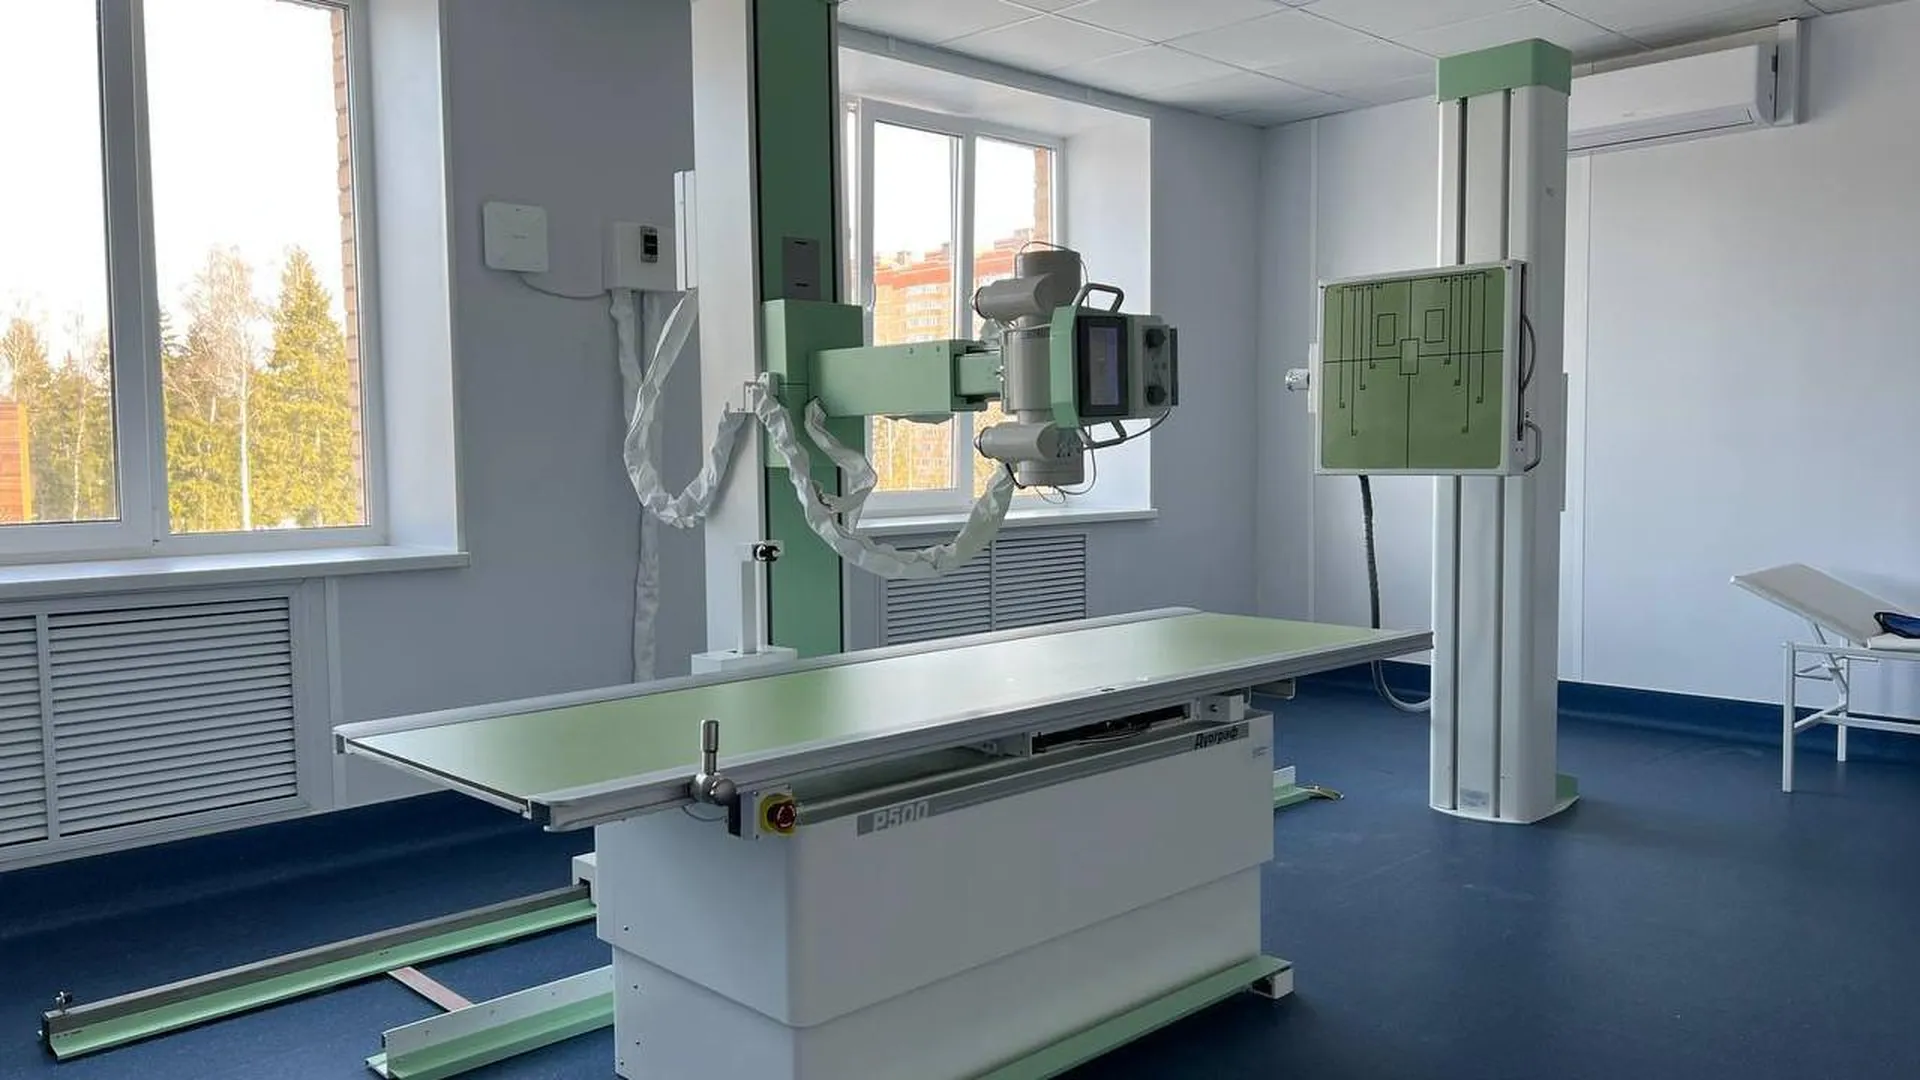 Современное медицинское оборудование продолжают устанавливать в поликлиниках подмосковной Лобни